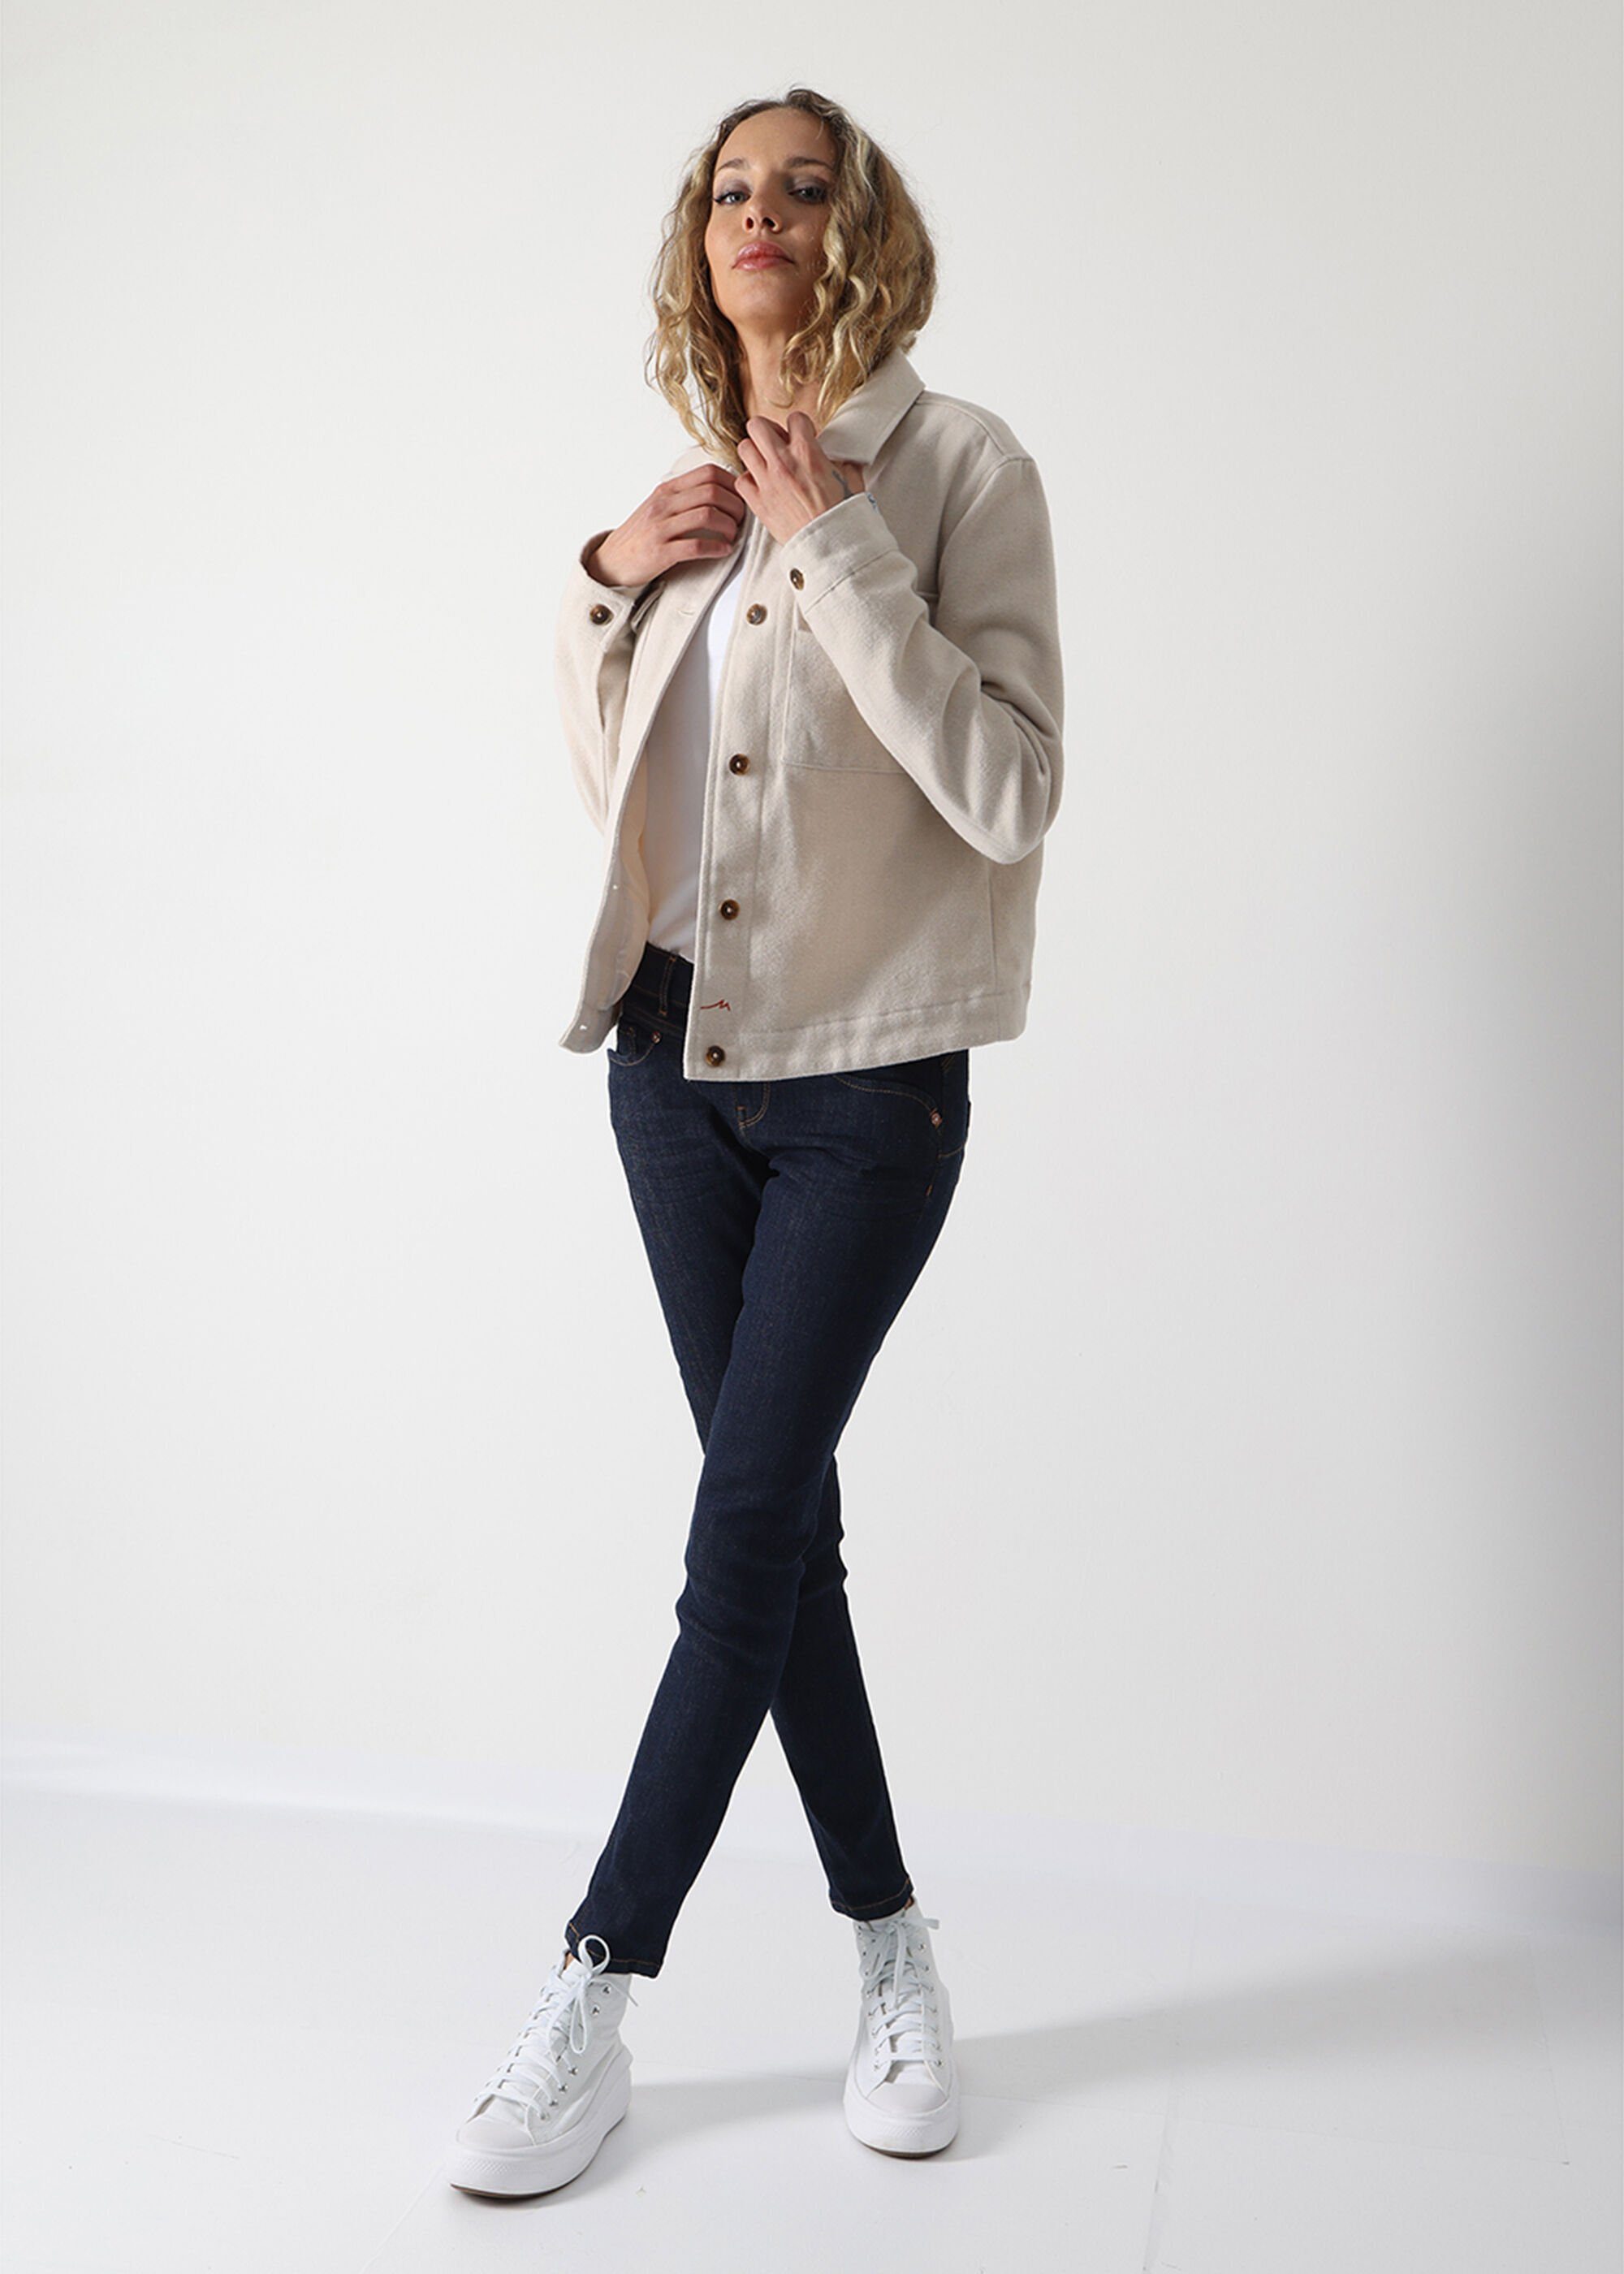 Denim Miracle of Ellen Skinny-fit-Jeans Used Look im